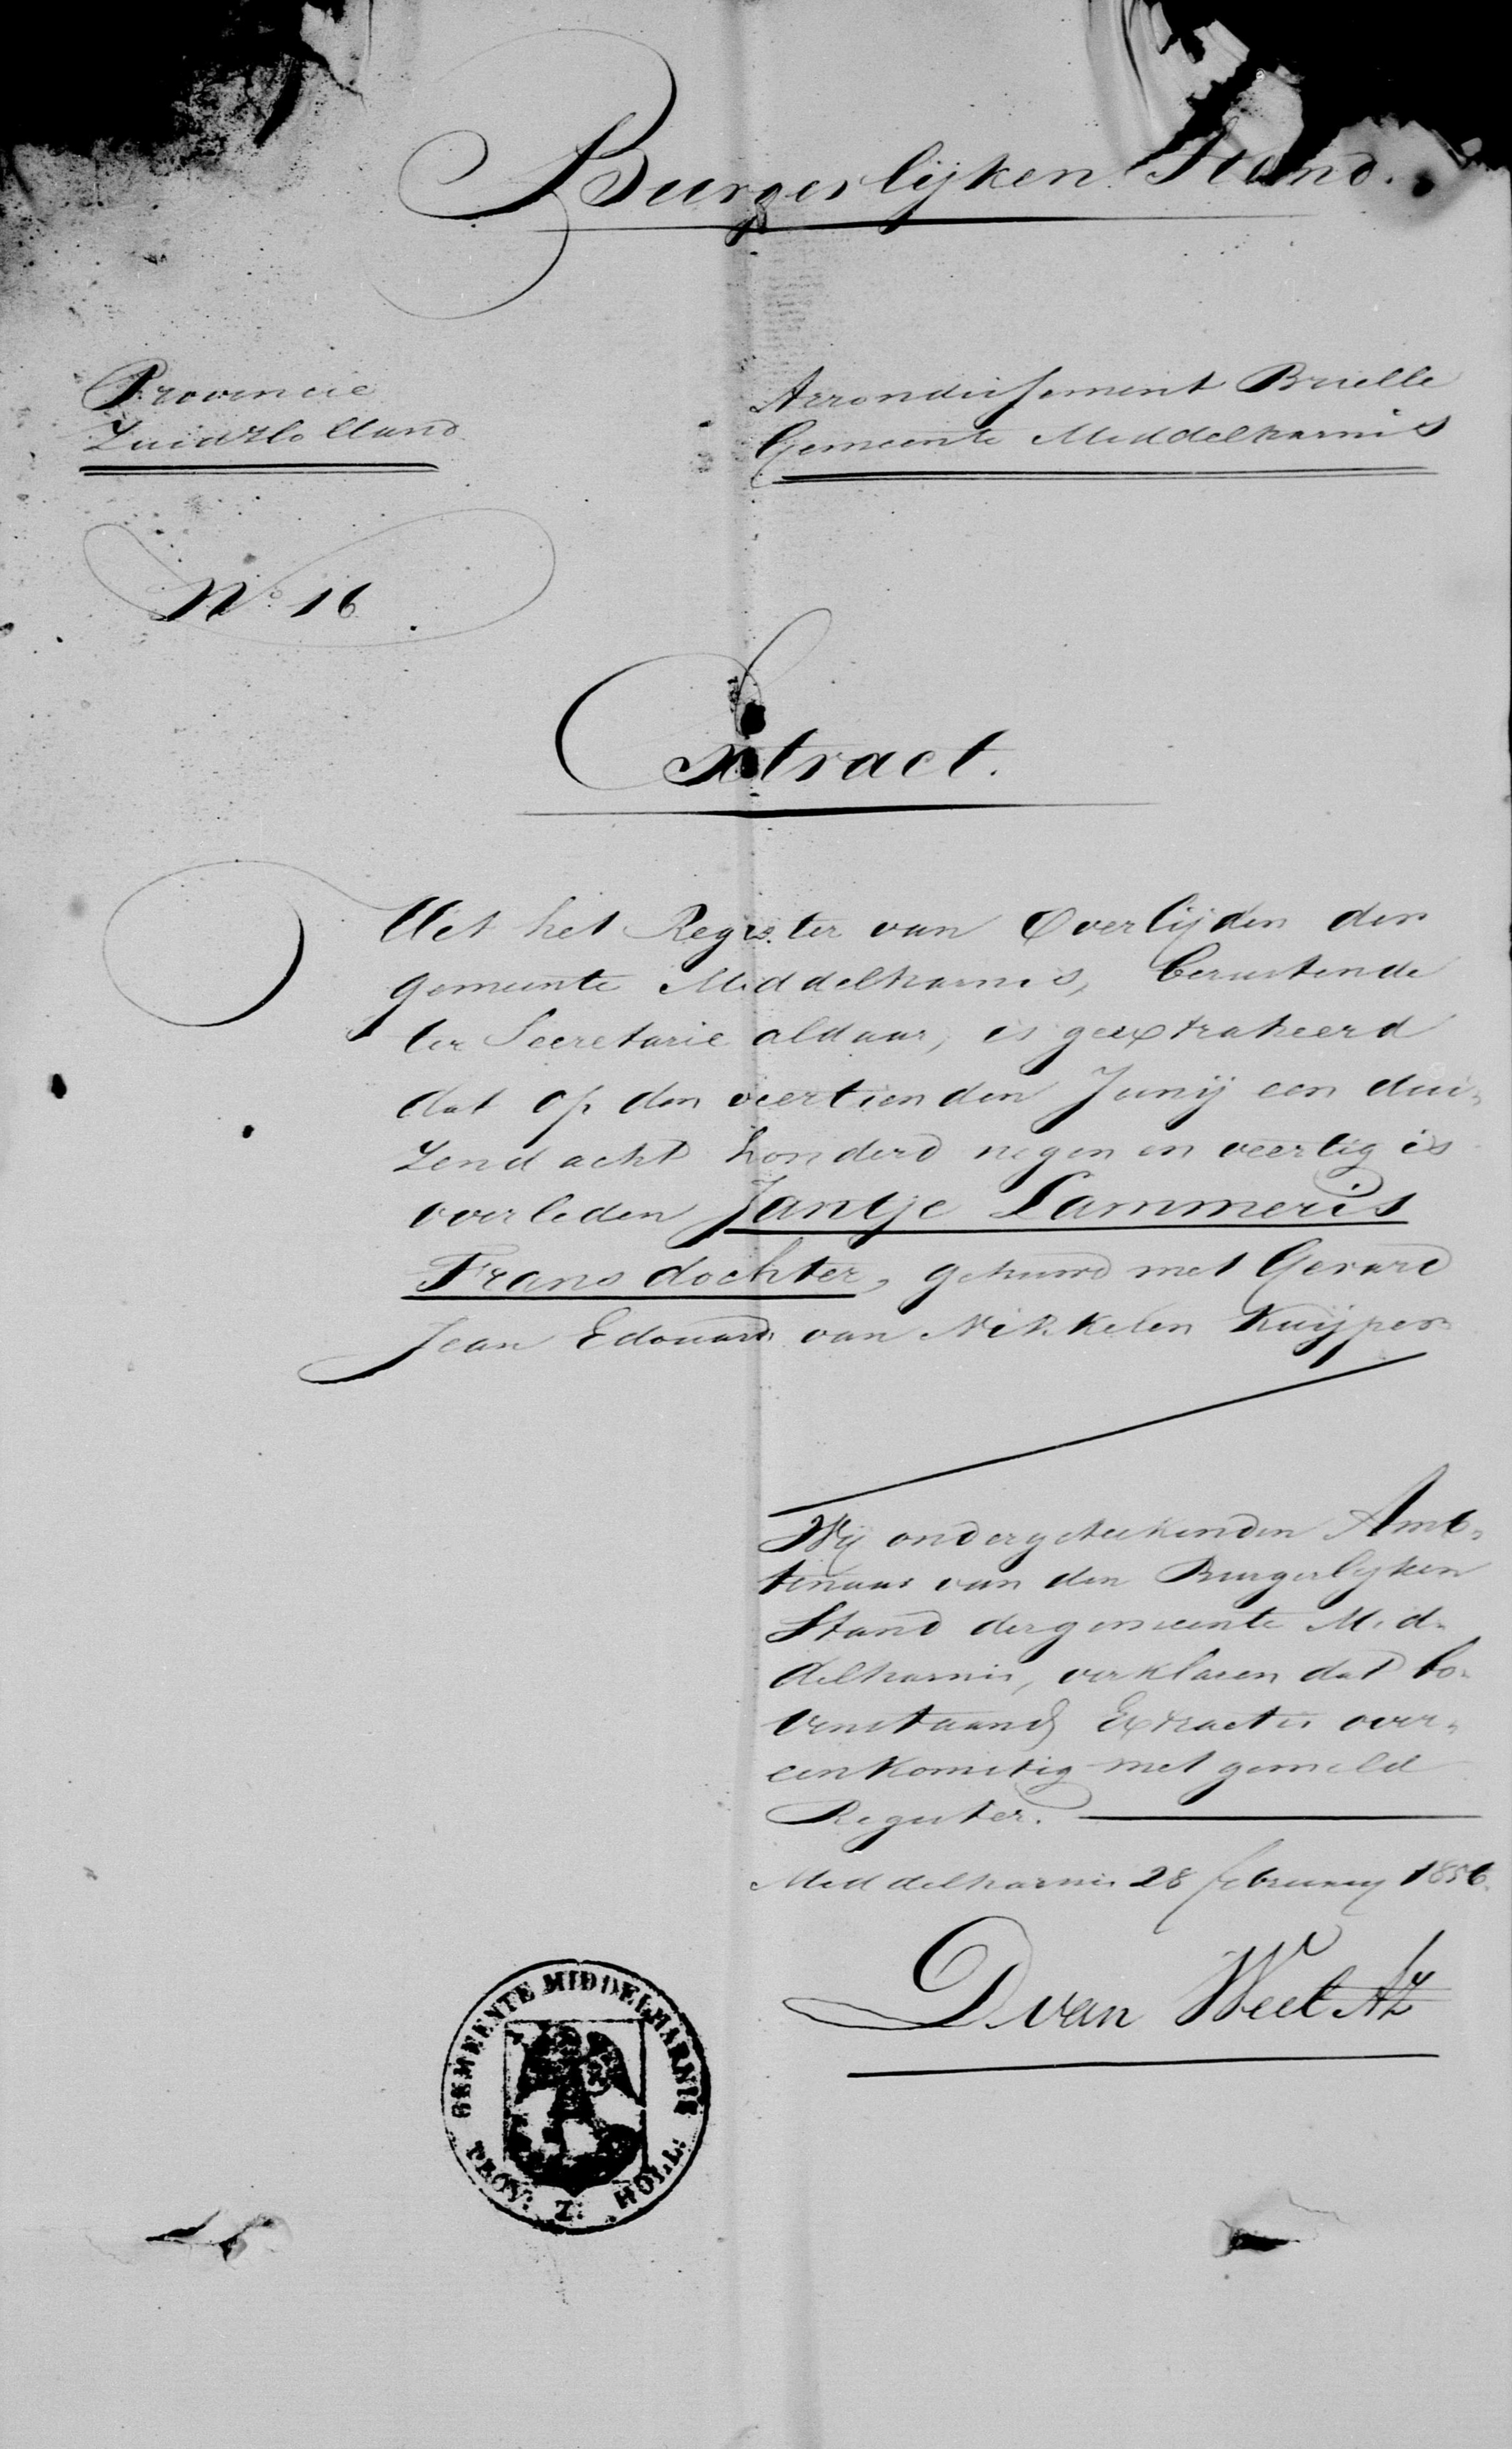  - Huwelijksbijlagen Eduard Eliza Francois van Nikkelen Kuijper en Trijntje van der Veer 28 februari 1856 (4)